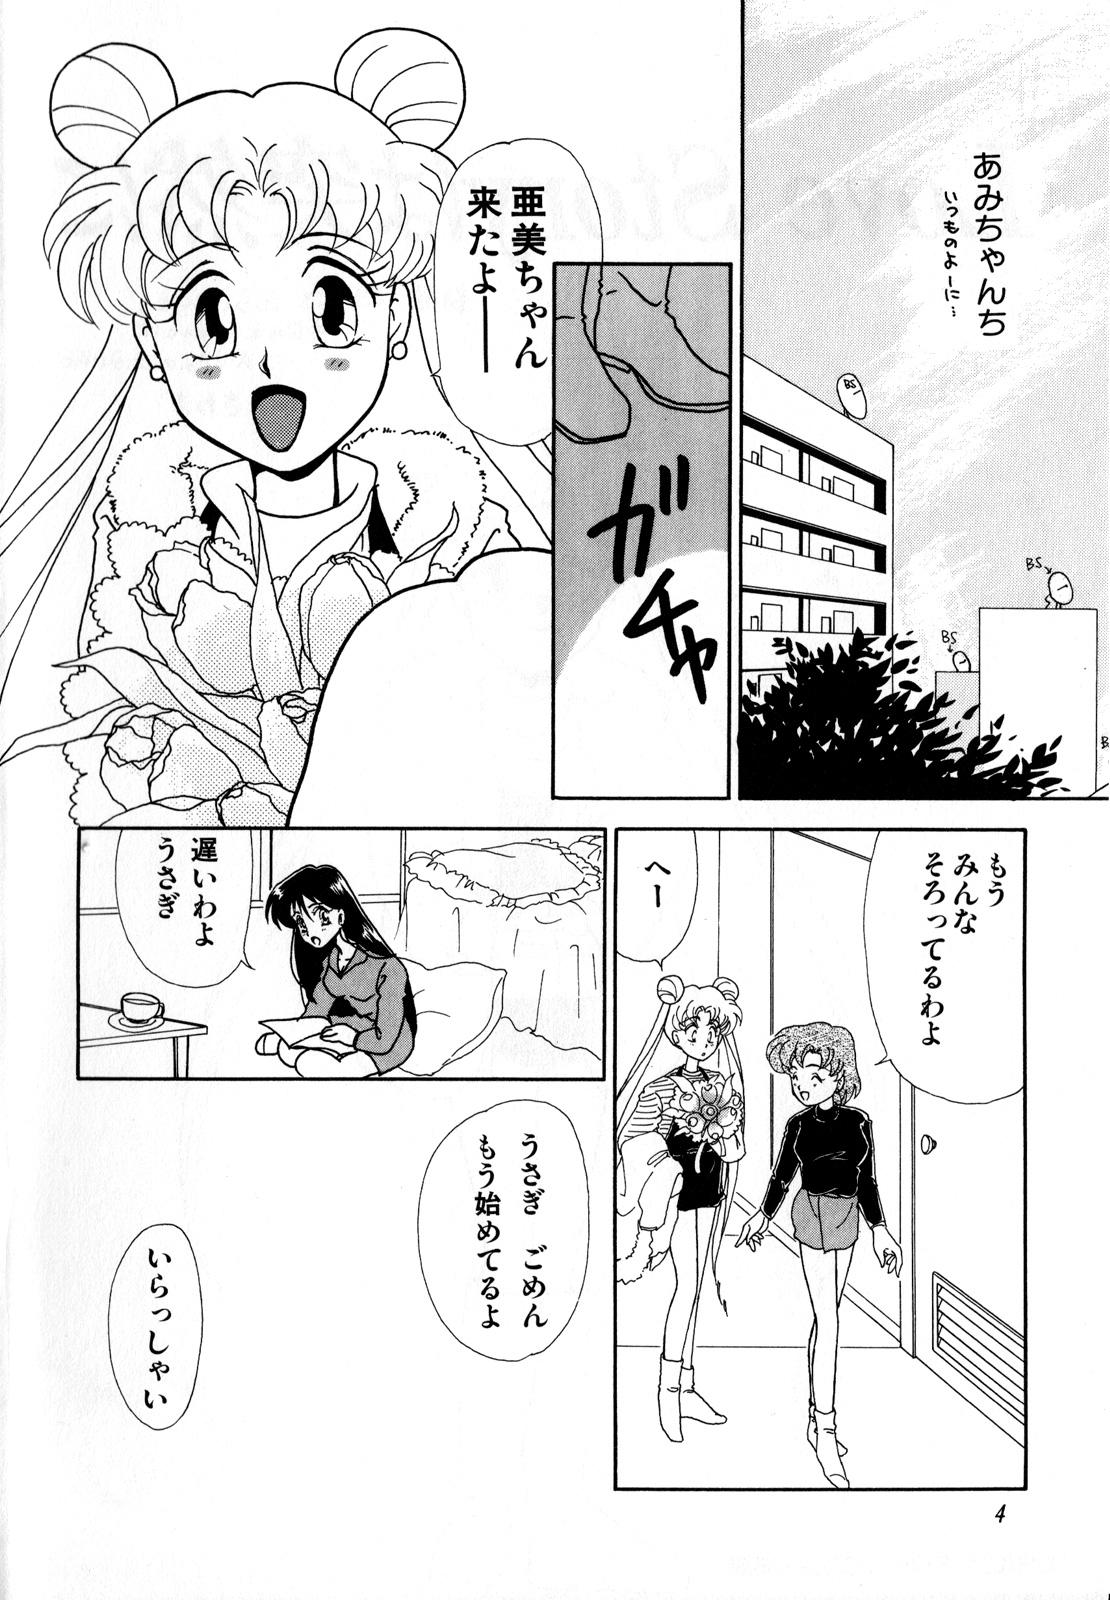 Couple Lunatic Party 3 - Sailor moon Gordibuena - Page 5